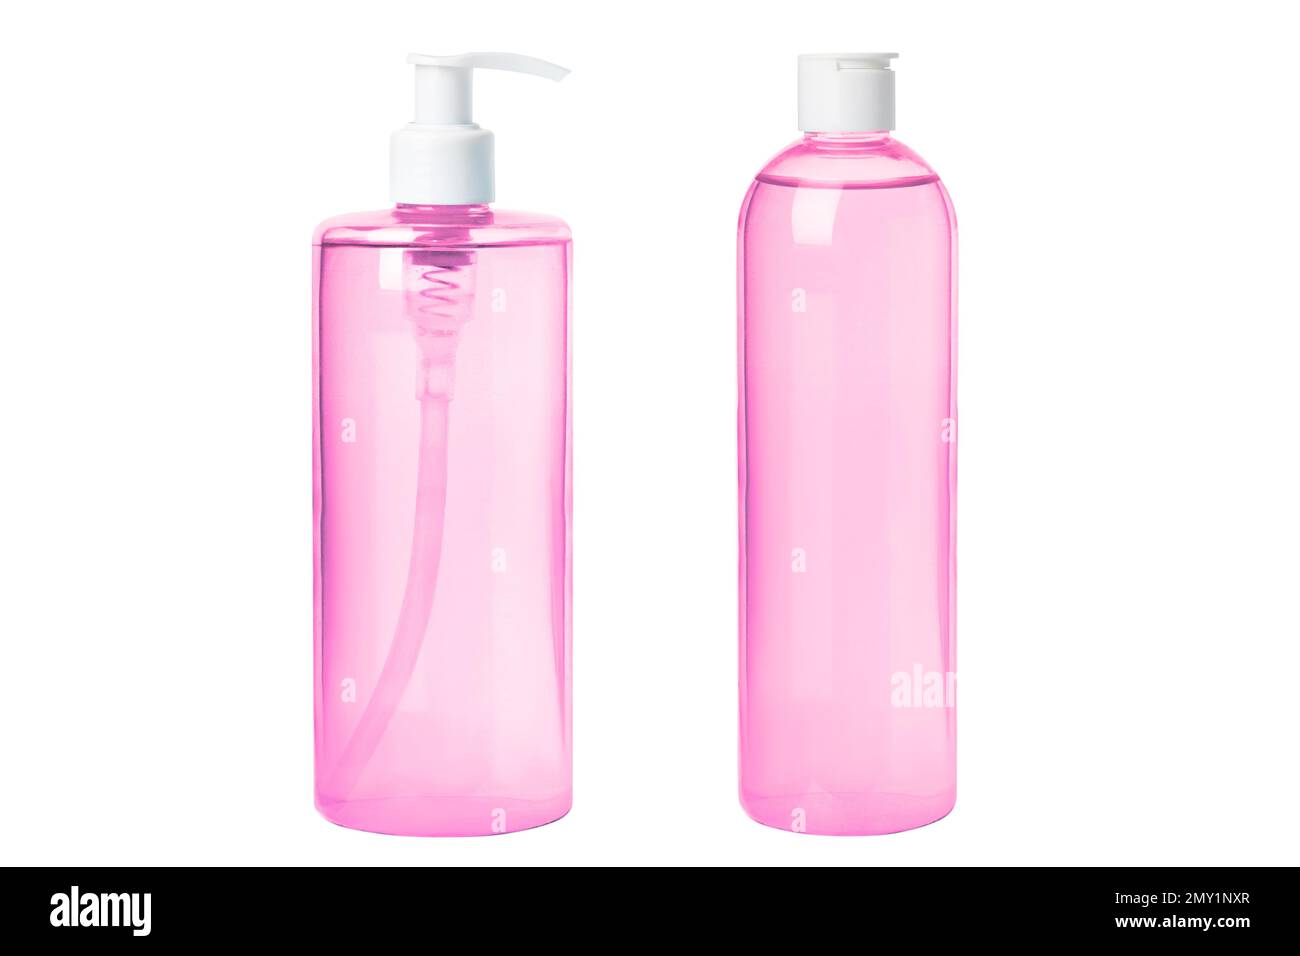 Définir. Encre cosmétique rose hydratante, sérum, eau micellaire isolée sur fond blanc. Flacons cosmétiques transparents. Avec distributeur Banque D'Images